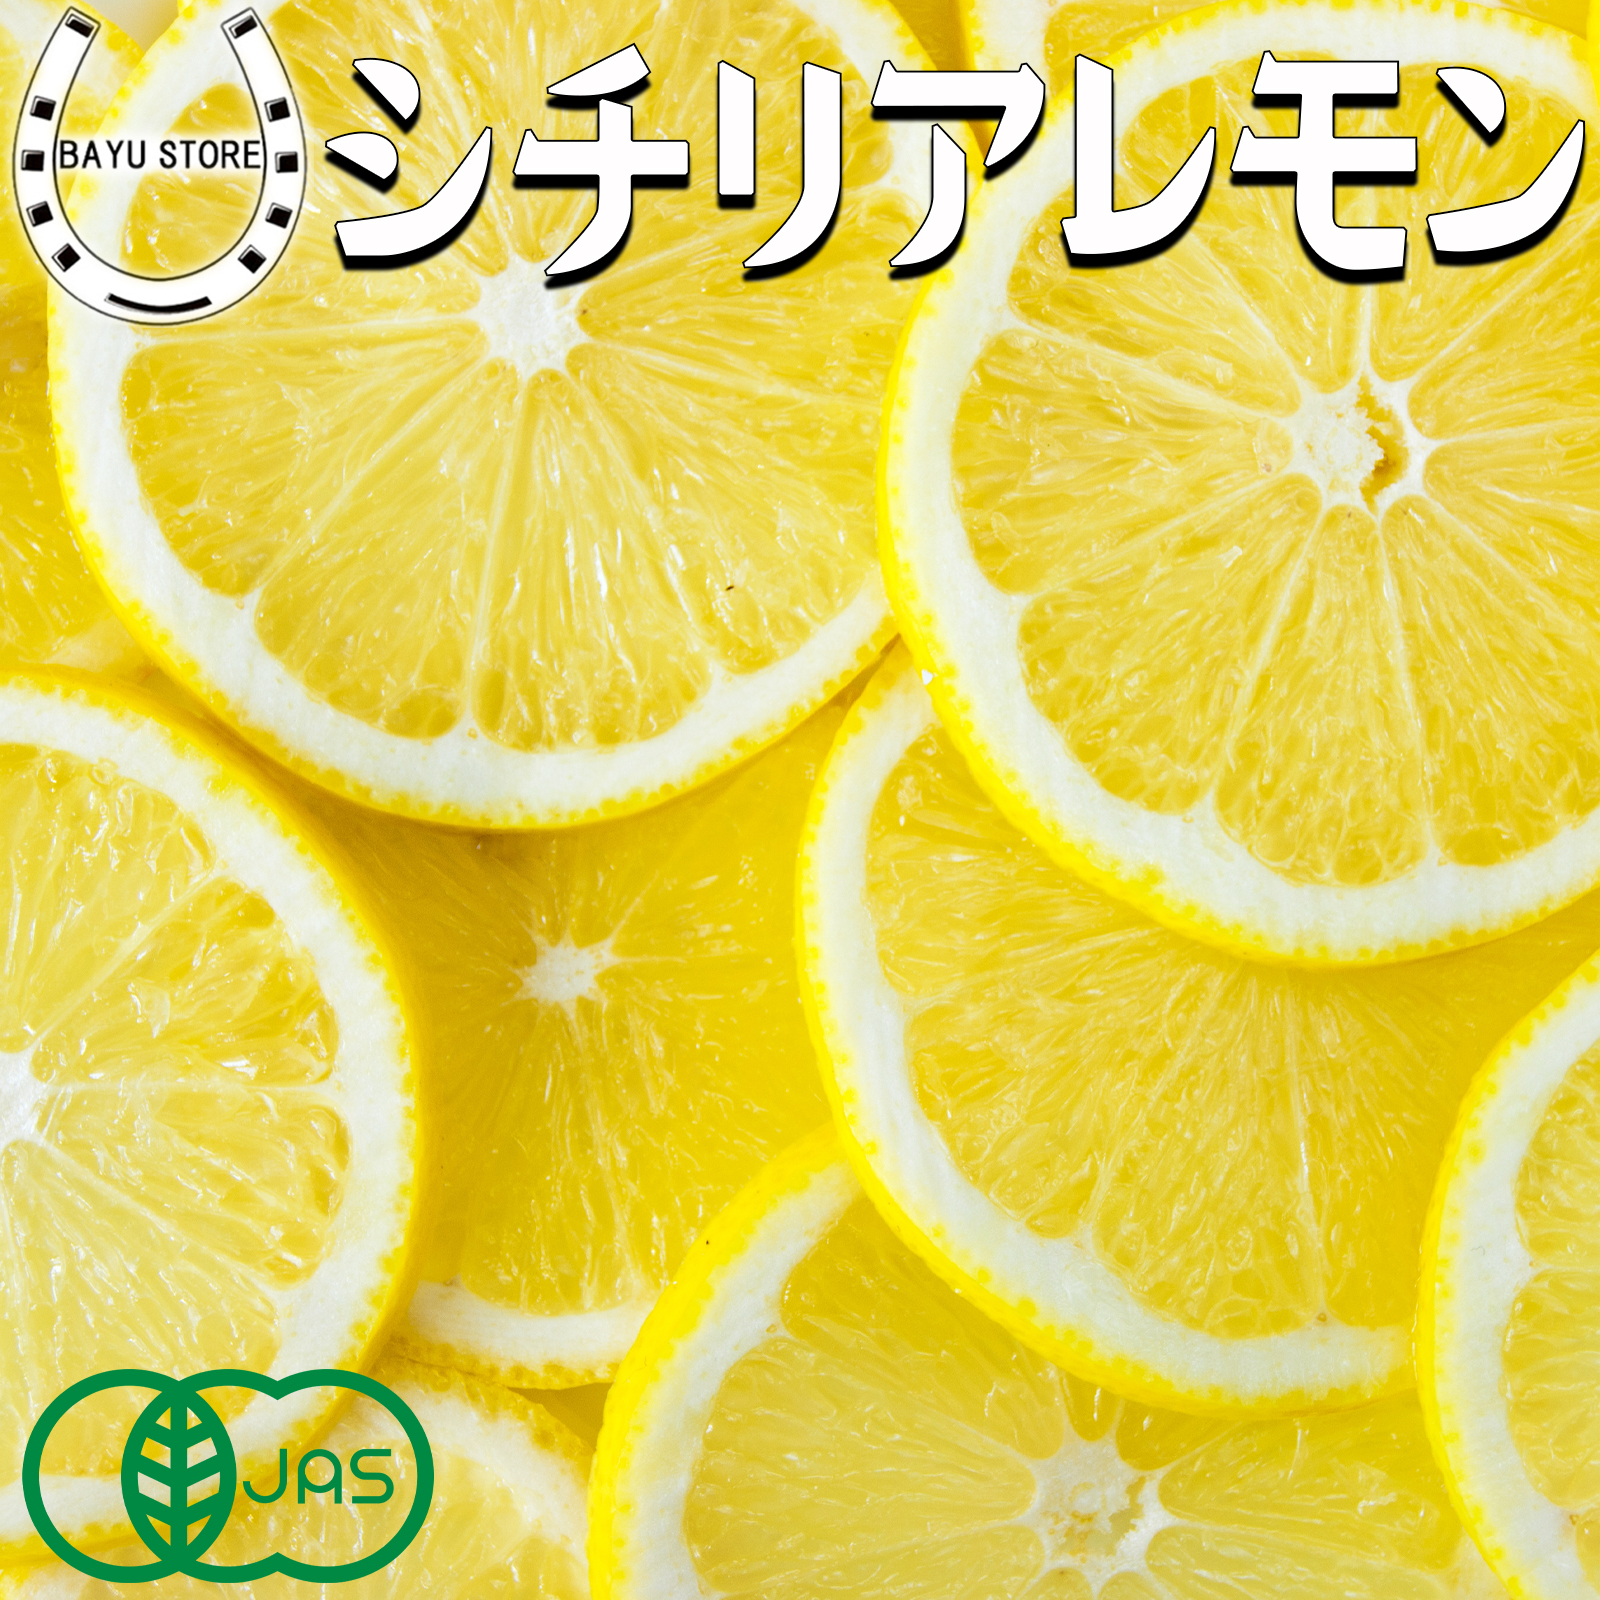 有機 Jas オーガニック 防腐剤 スライス 冷凍 ノーワックス 500g 輪切り 皮ごと食べられる シチリアレモン 農薬不使用 防かび剤不使用